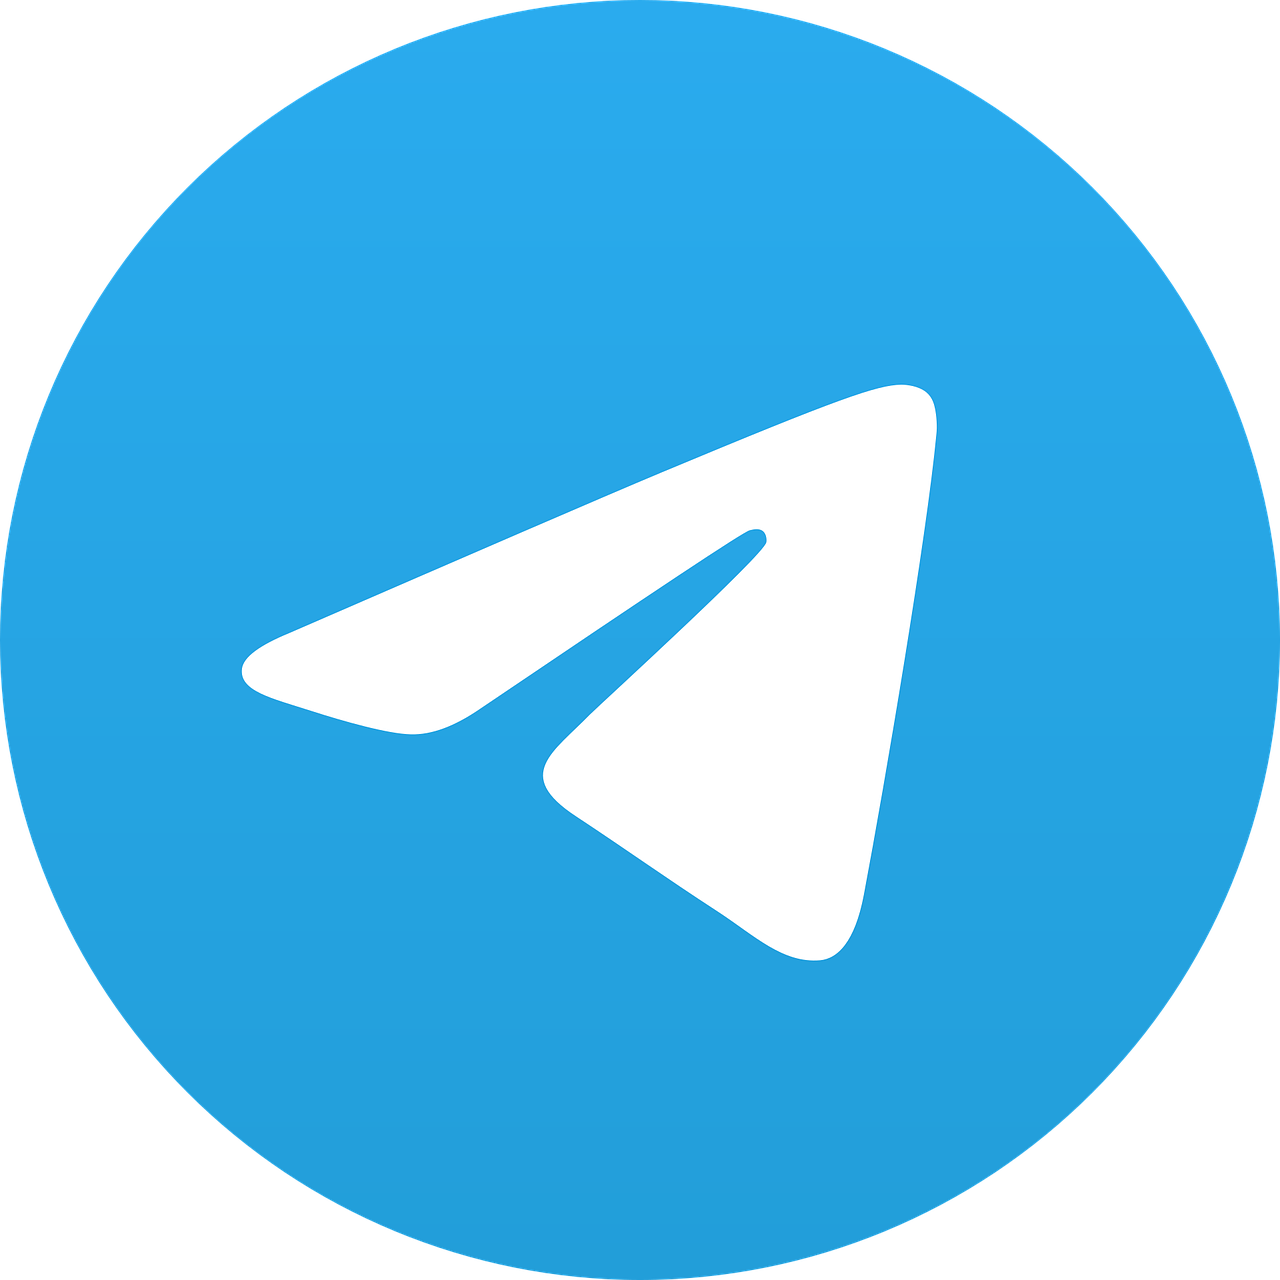 دانلود لوگو تلگرام به صورت وکتور و پی ان جی